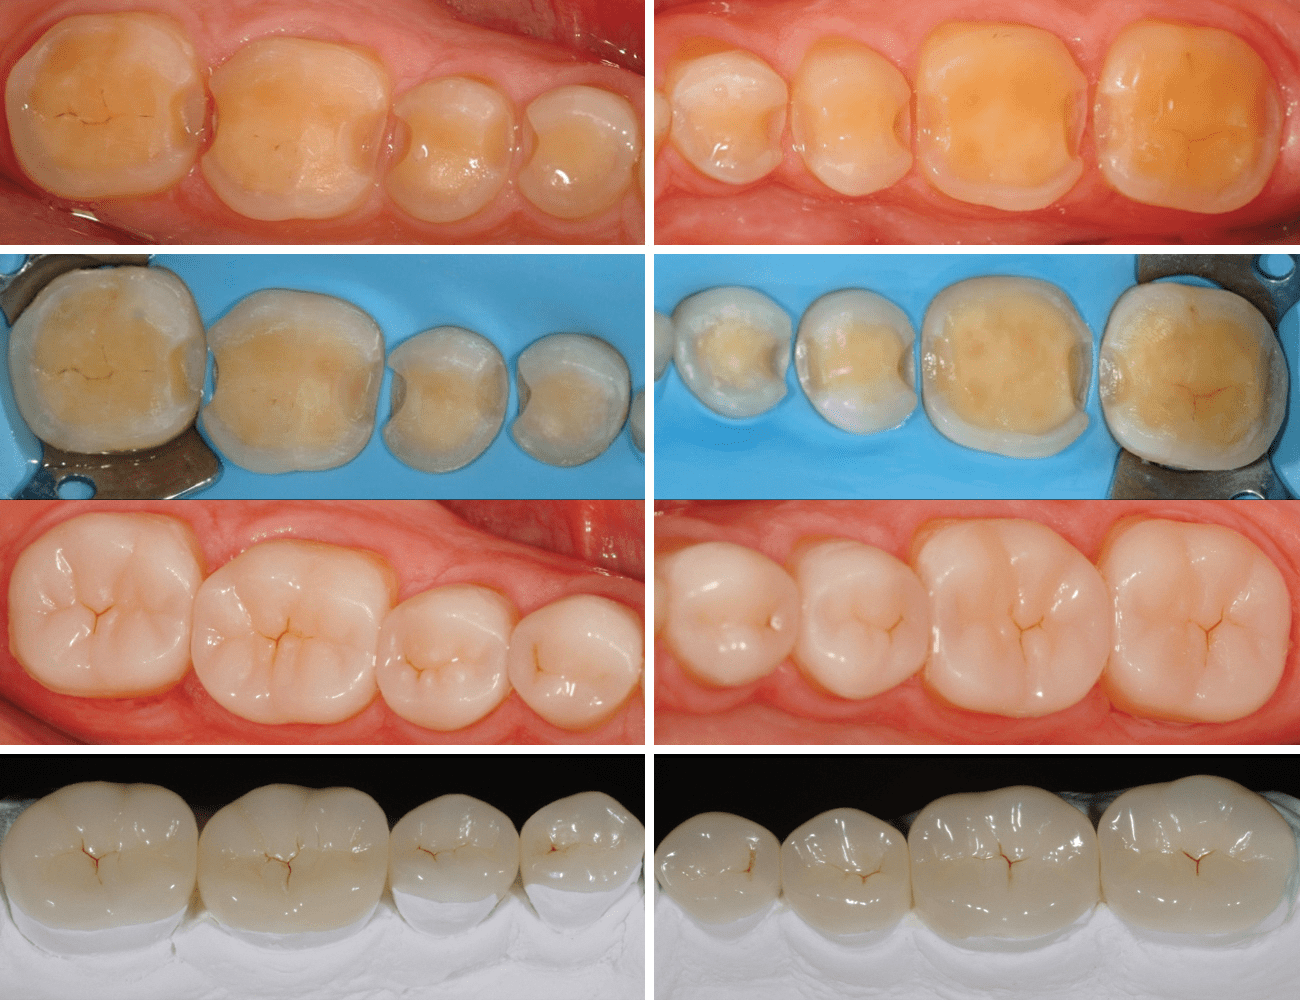 3 / Preparazioni dentali 4 / Risultato ﬁnale sul modello e in cavo orale Credits: Dr. N. Perakis